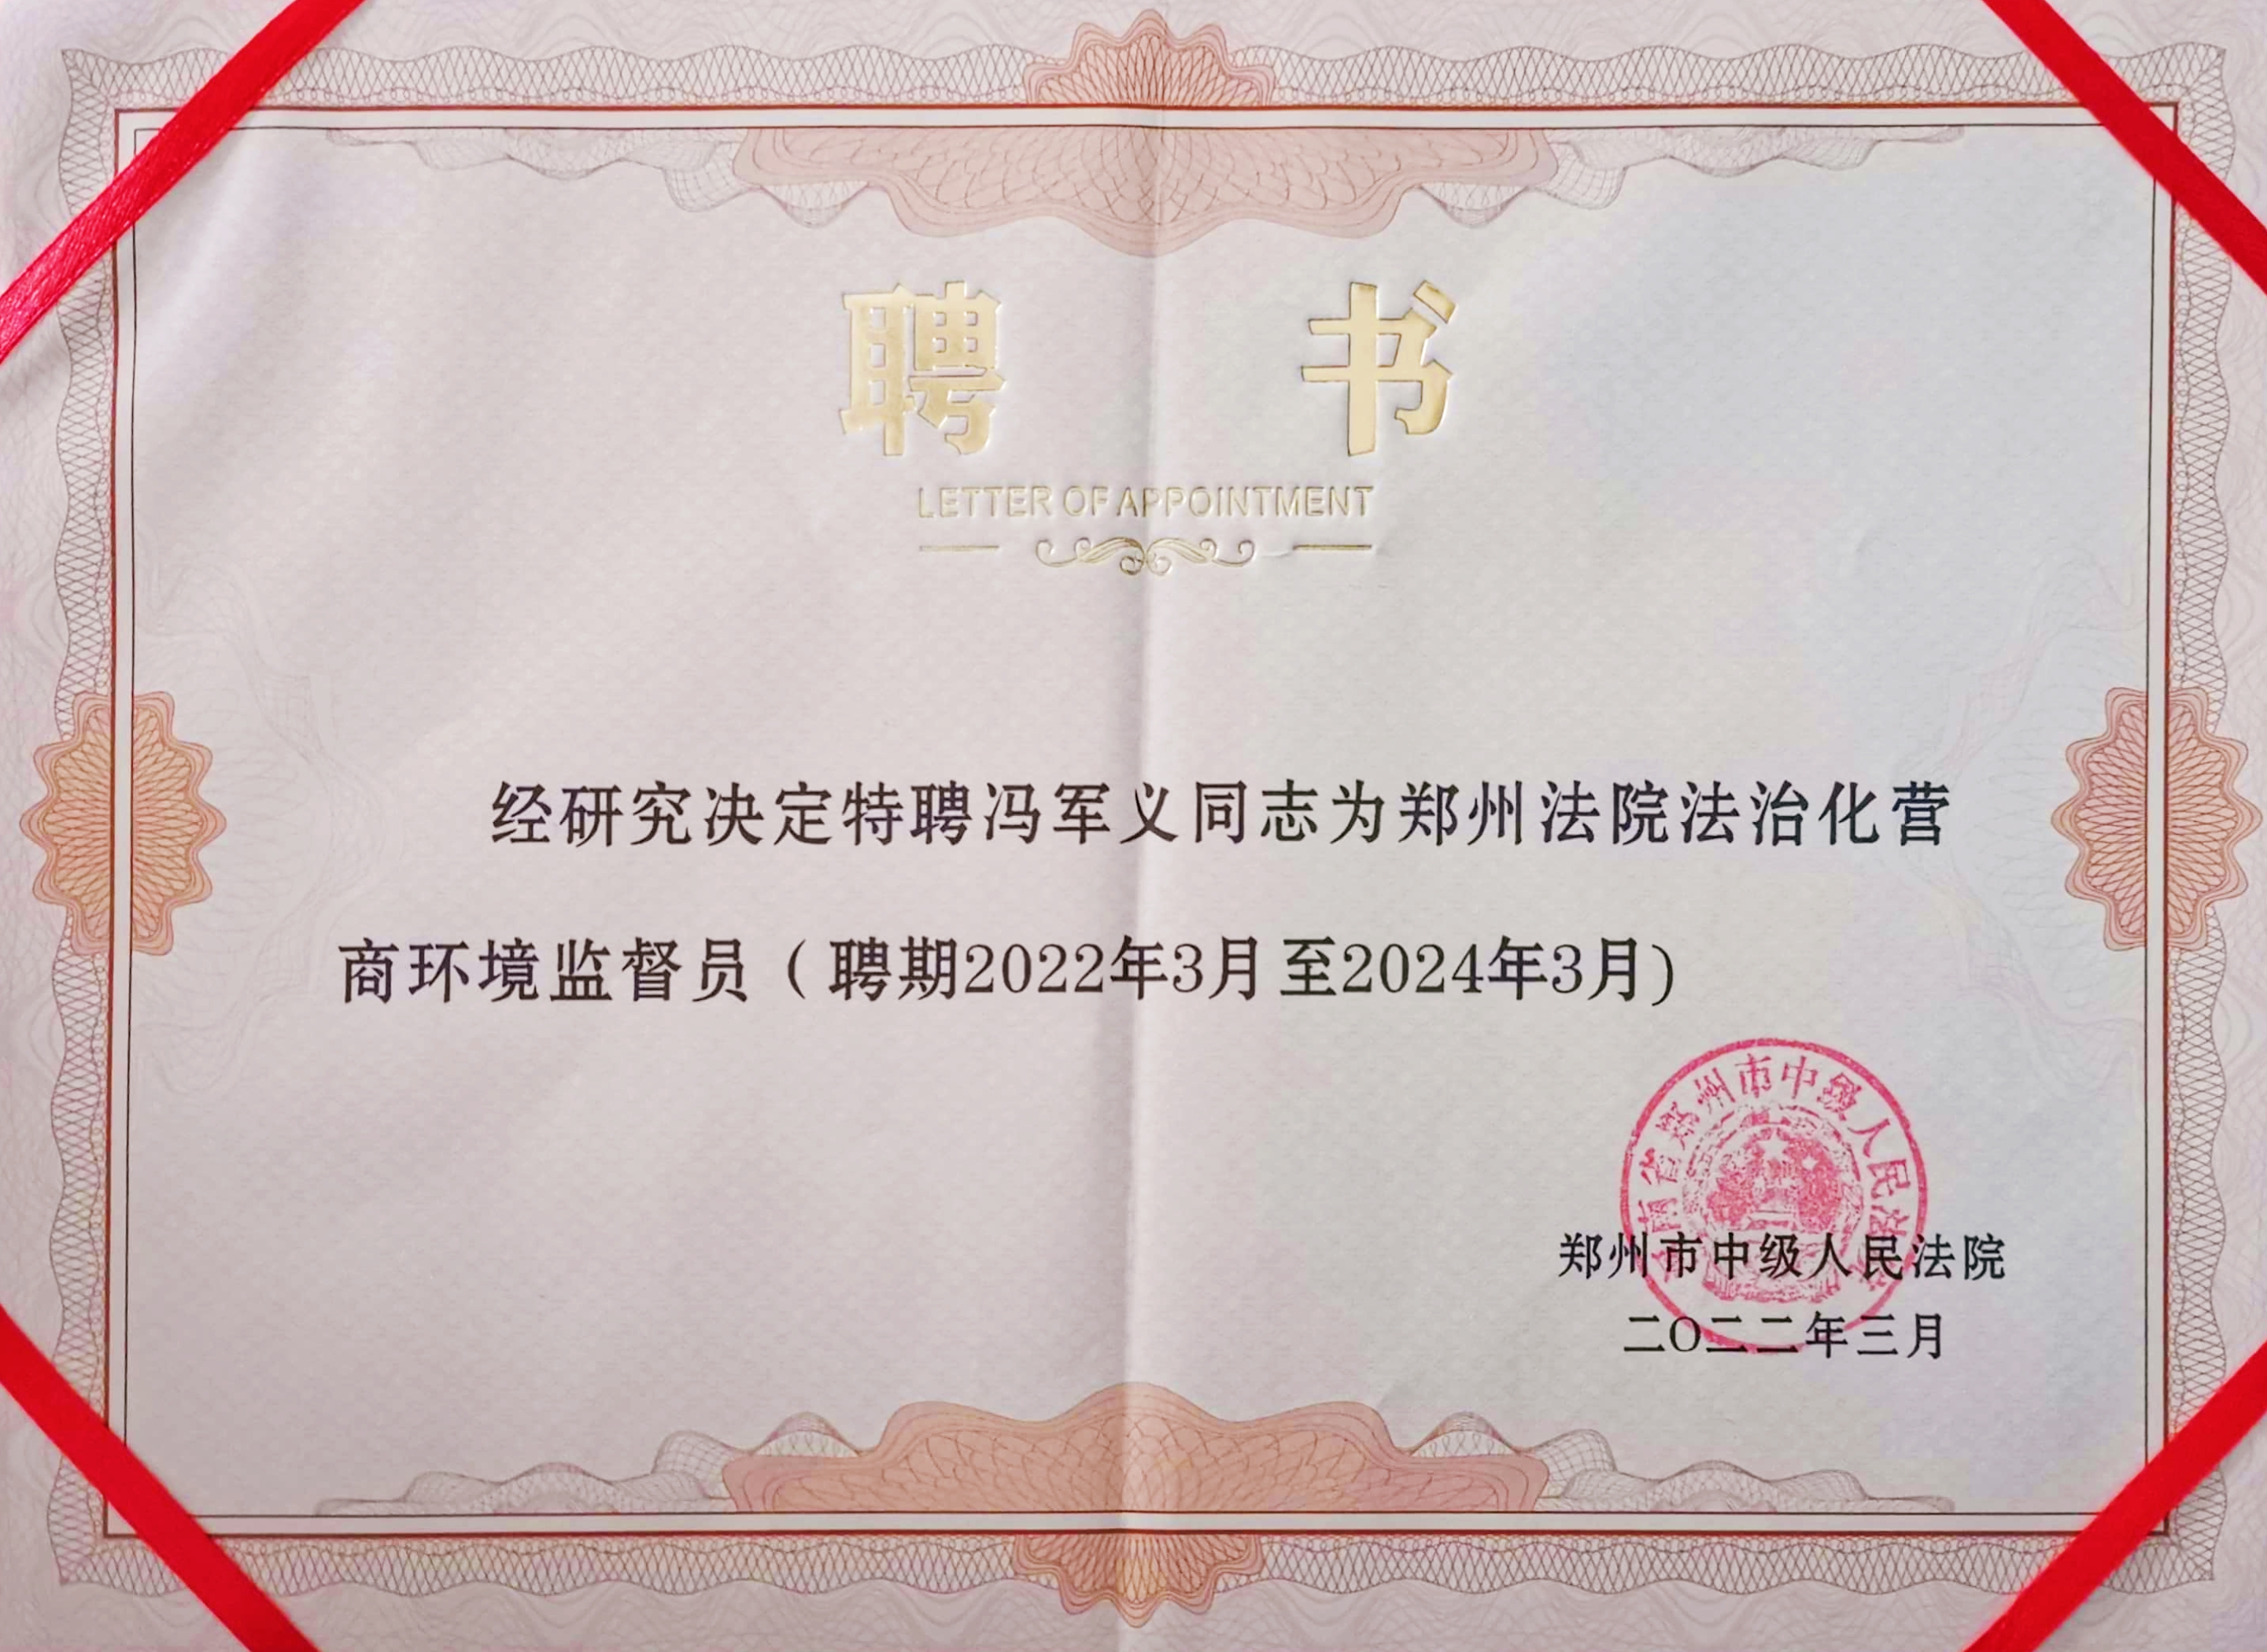 2022年3月 受聘为郑州法院法治化营商环境监督员.jpg